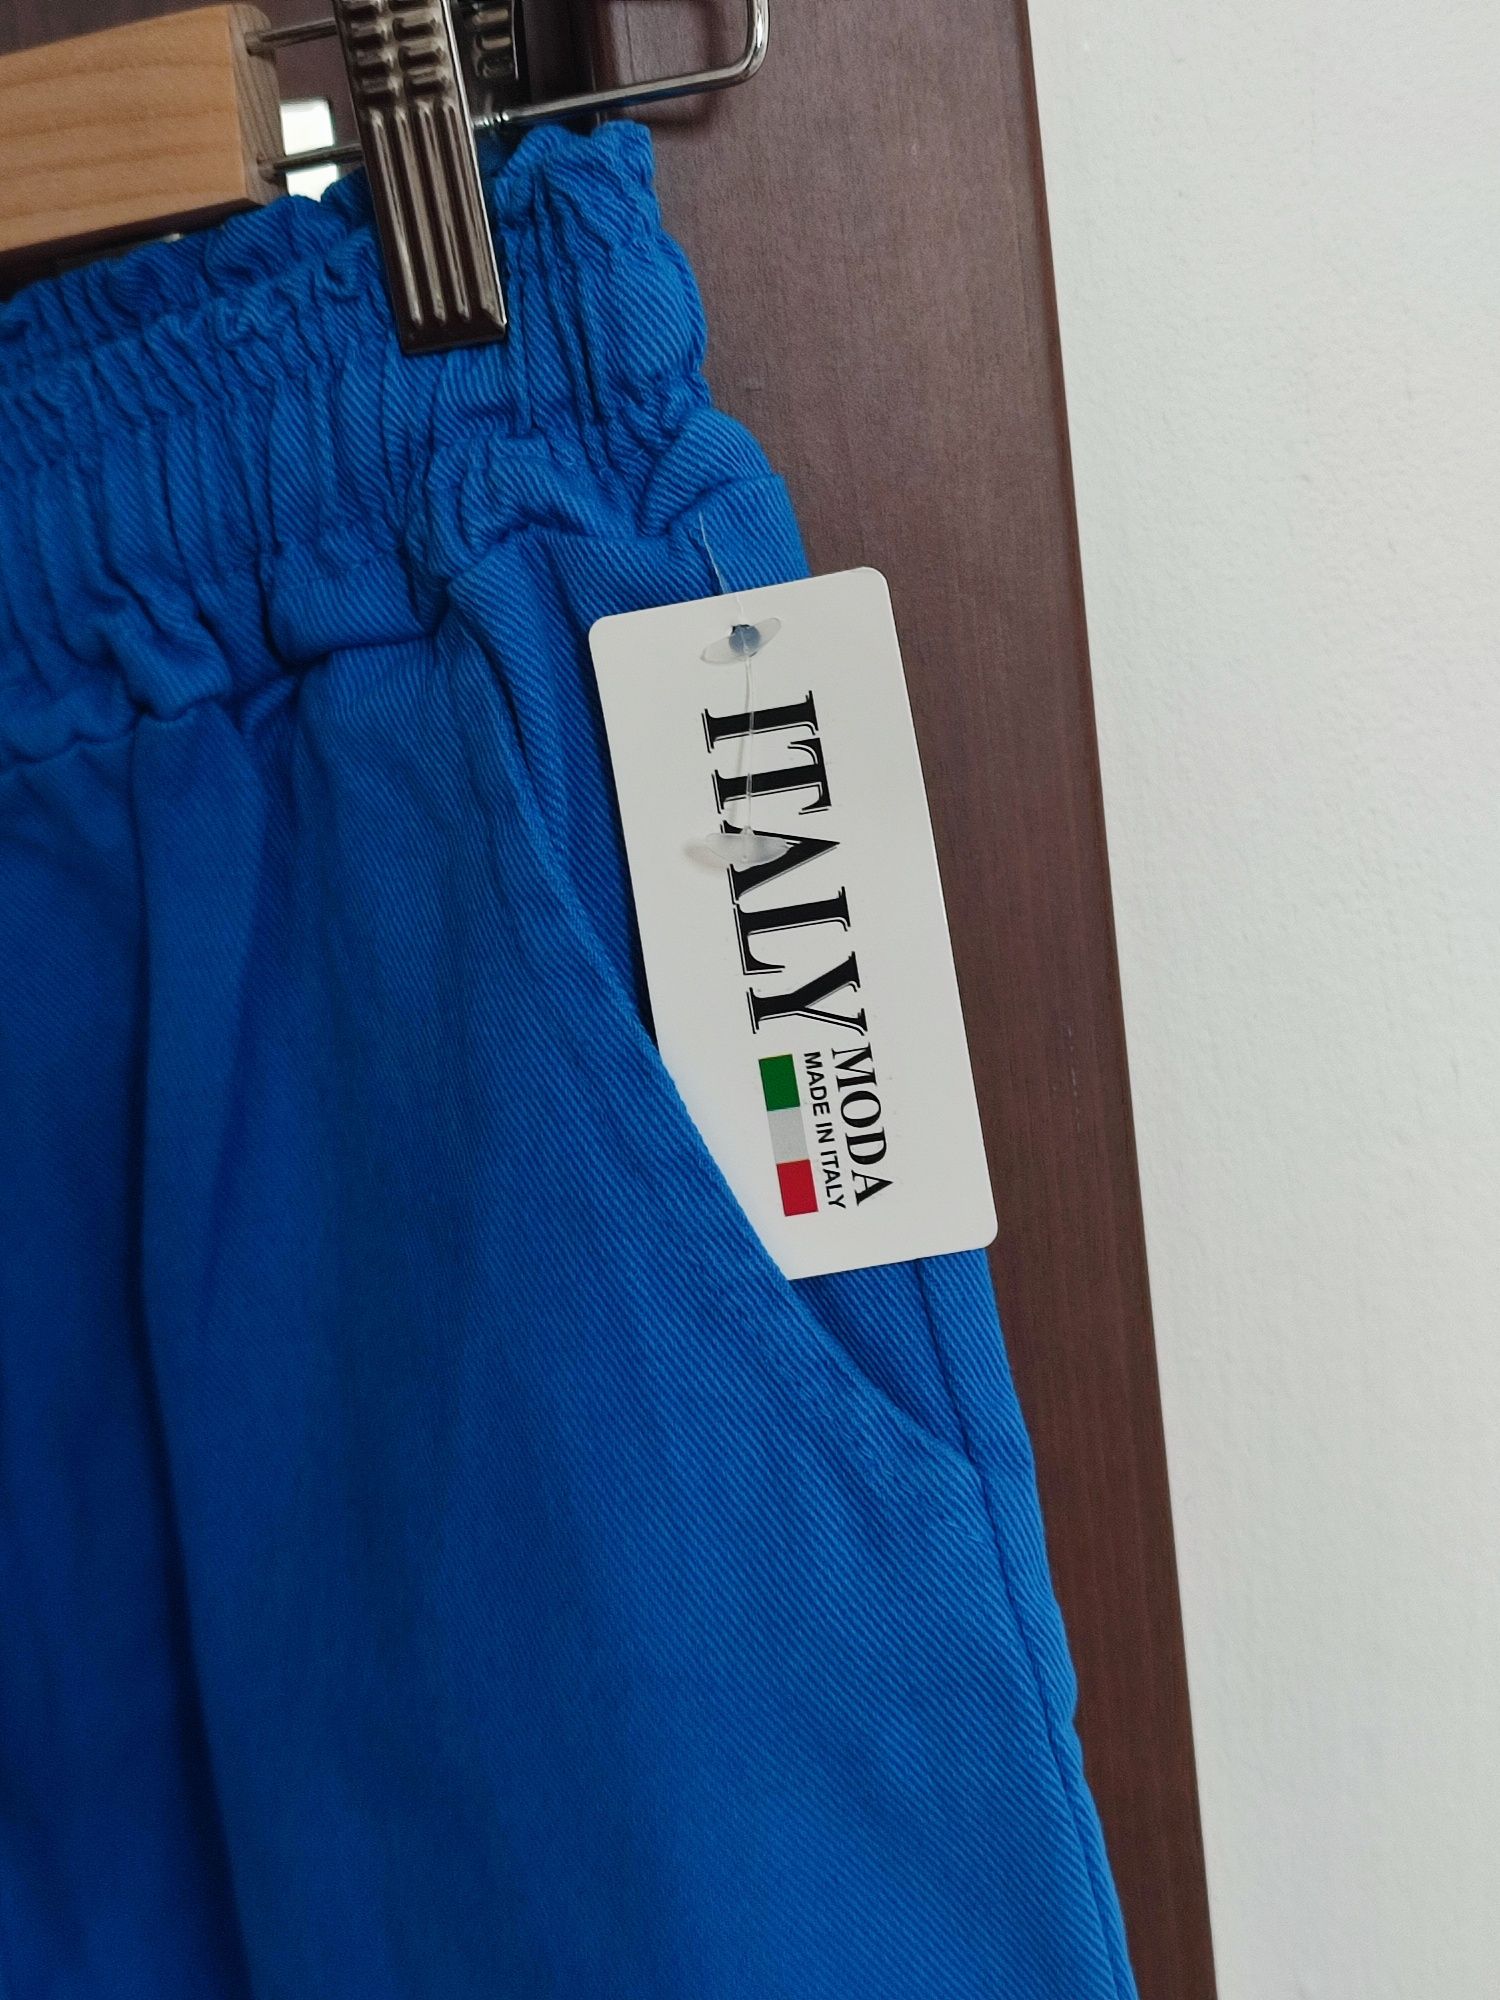 Nowe spodnie damskie S,  100% bawełny MADE IN ITALY